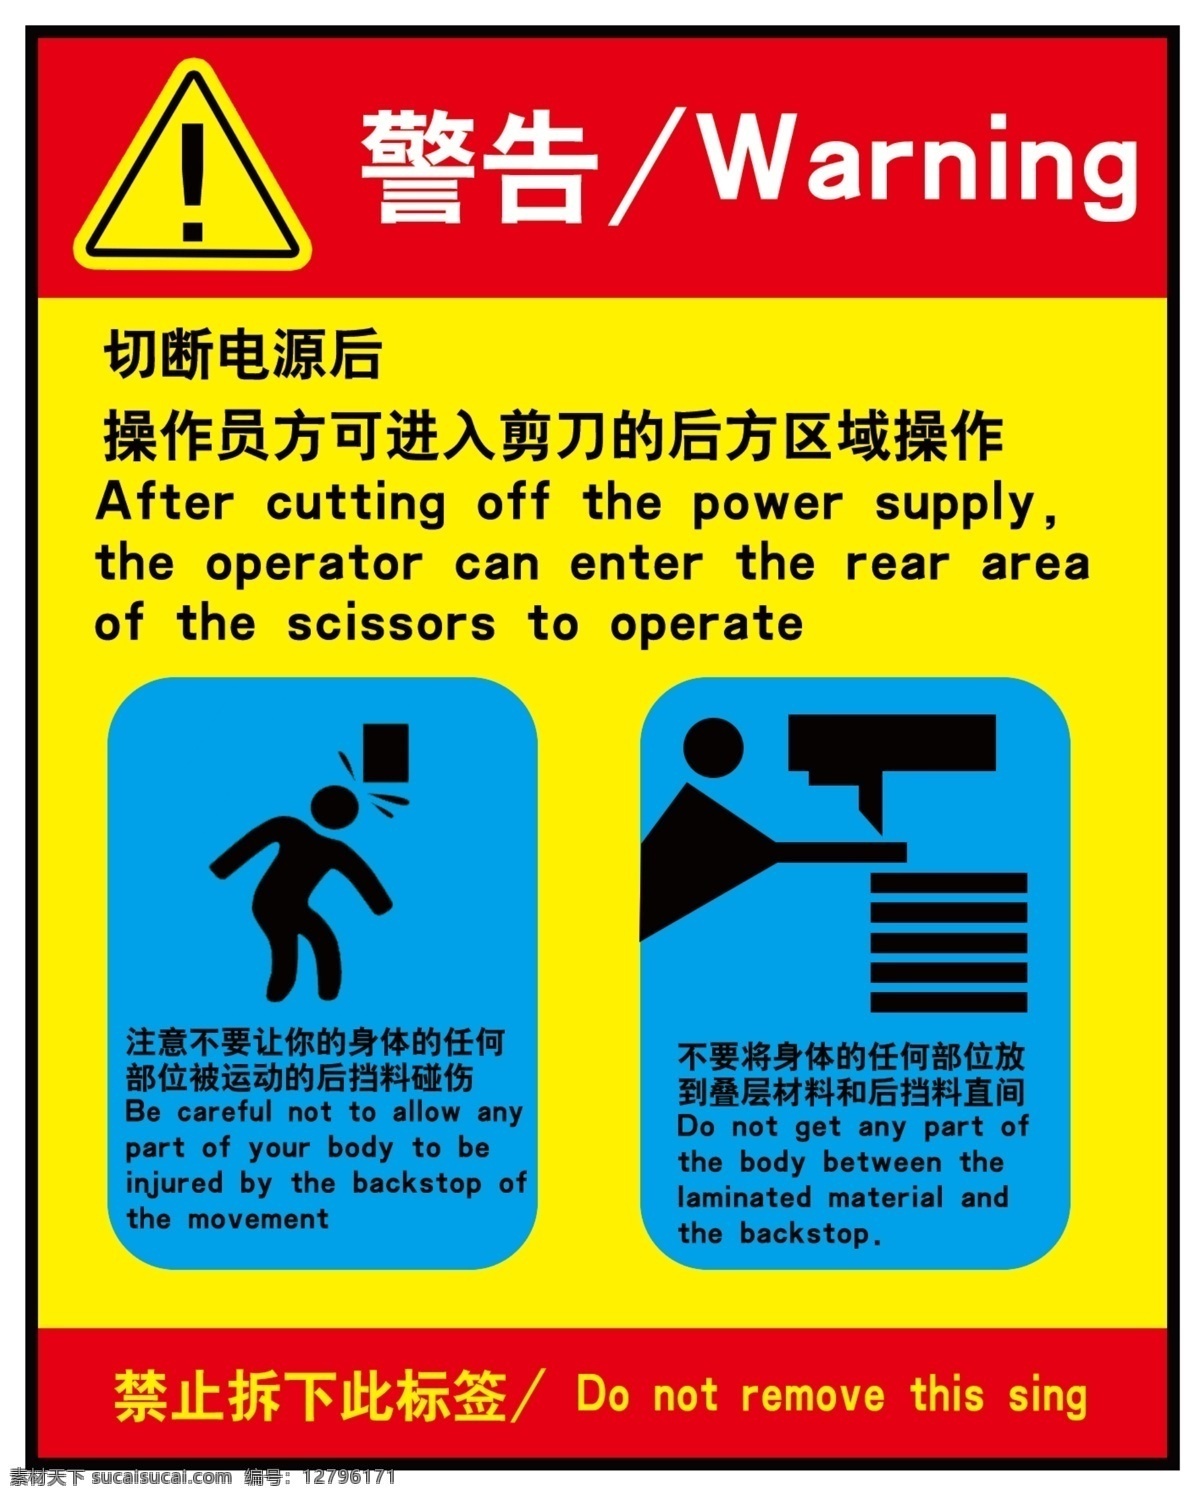 警告图片 警告 warning 安全告示 小心碰头 切断电源 小心玻璃 标志图标 公共标识标志